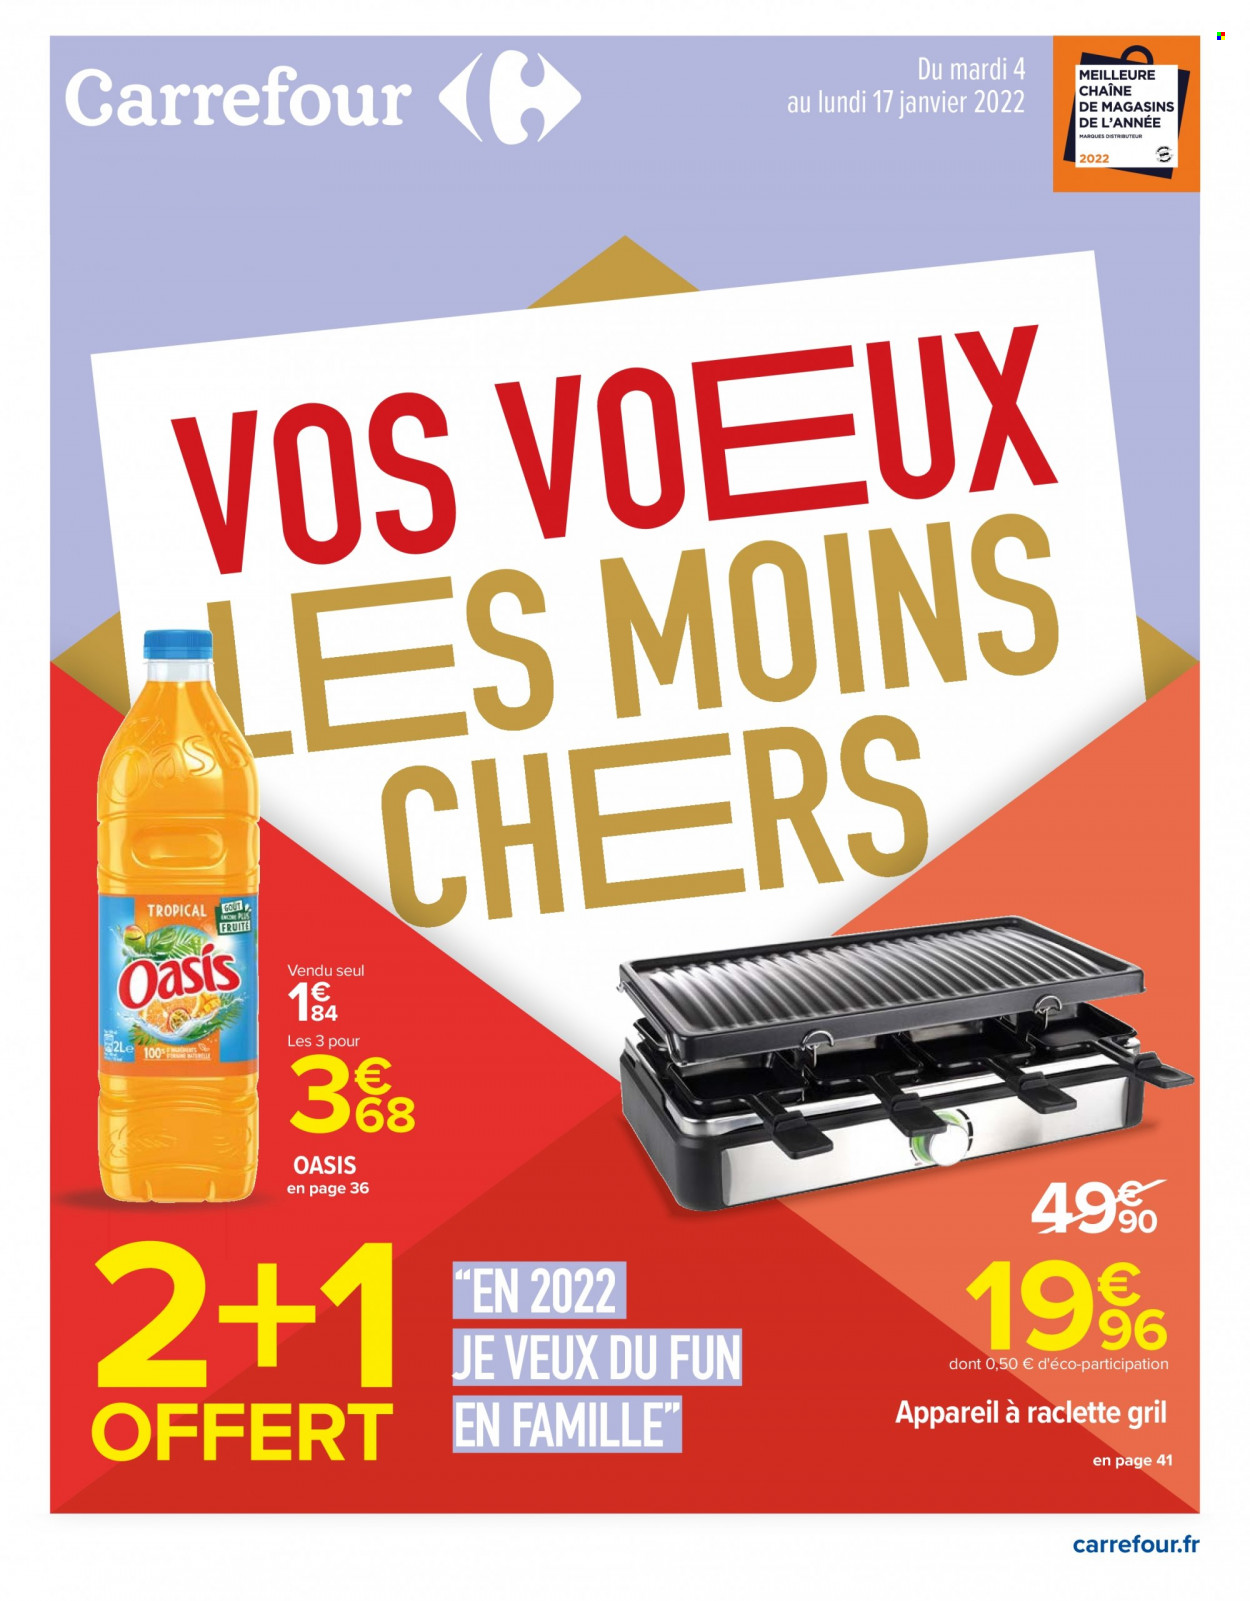 Catalogue Carrefour Hypermarchés - 04/01/2022 - 17/01/2022 - Produits soldés - La Raclette, Oasis, appareil à raclette. Page 1.